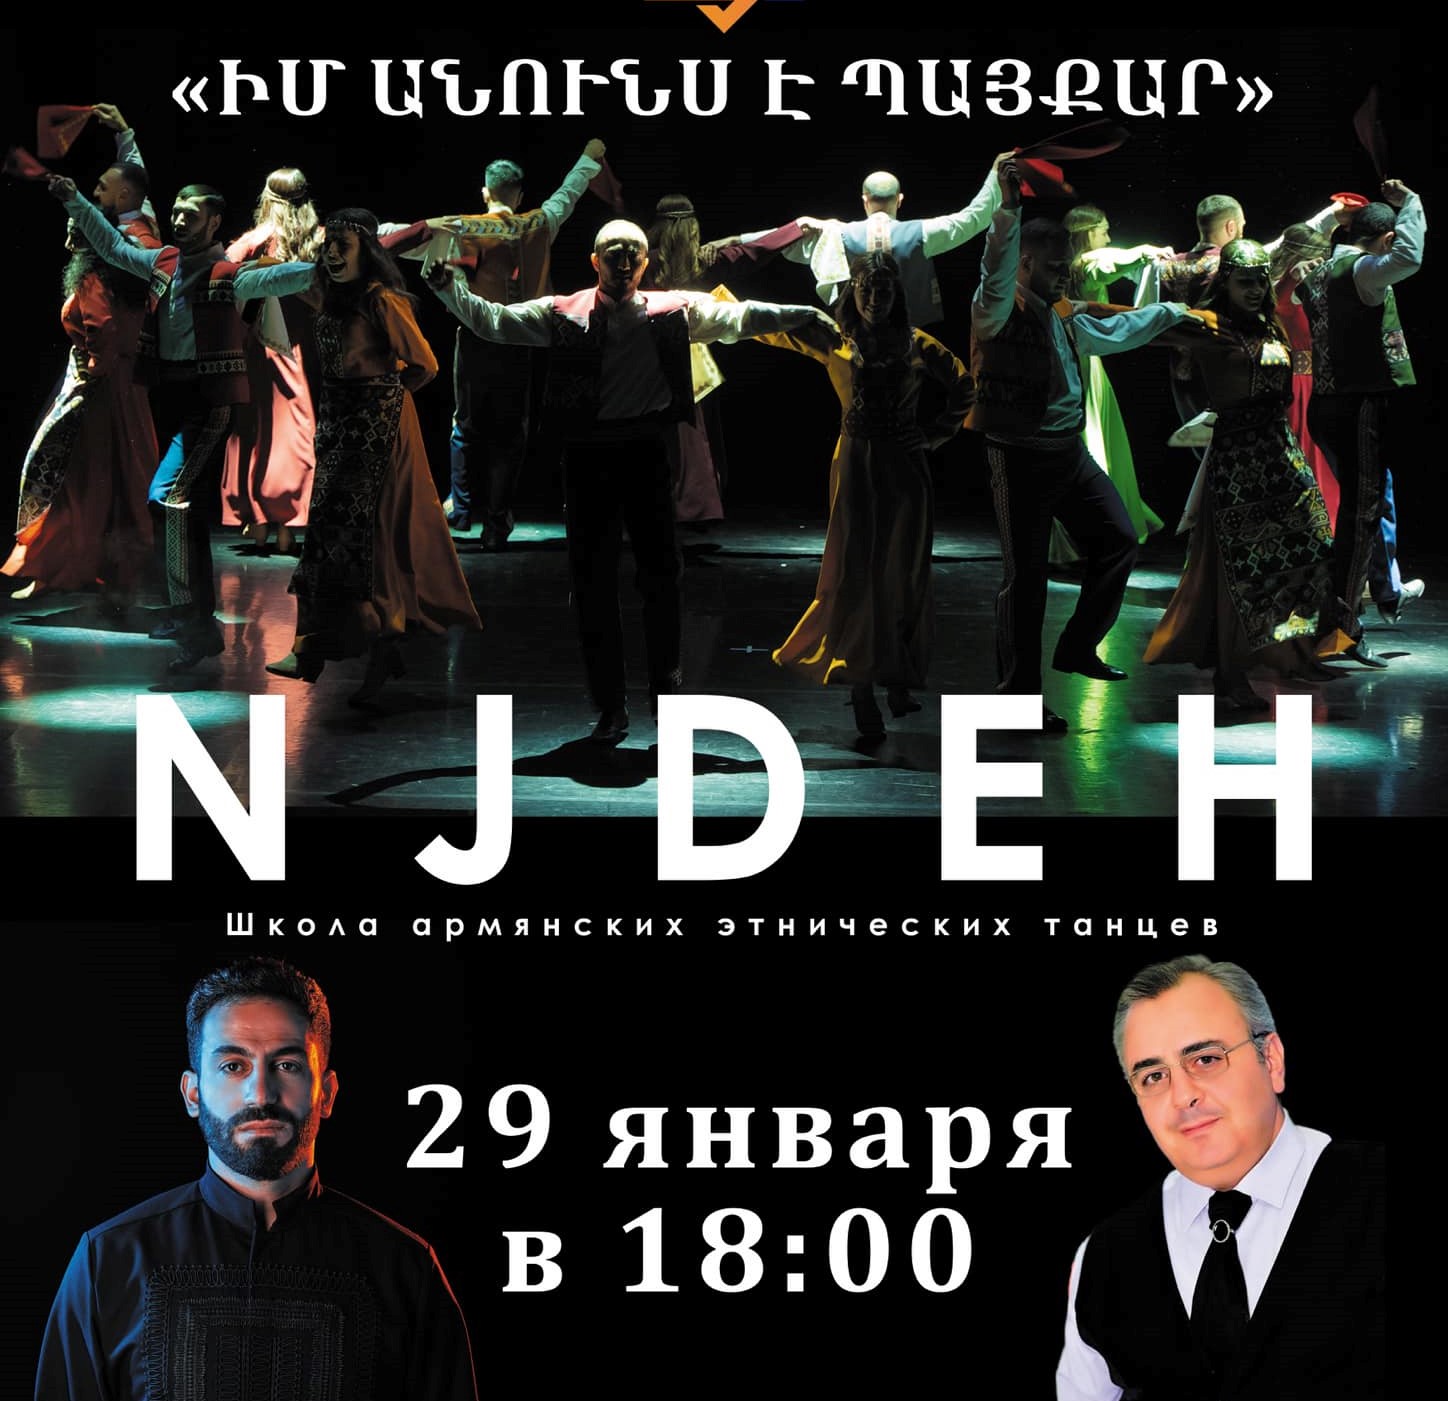 Մոսկվայում արգելել են Նժդեհ պարախմբի համերգը. համերգից առաջ հայտարարել են՝ համերգասրահում ական կա տեղադրված. Գինոսյան